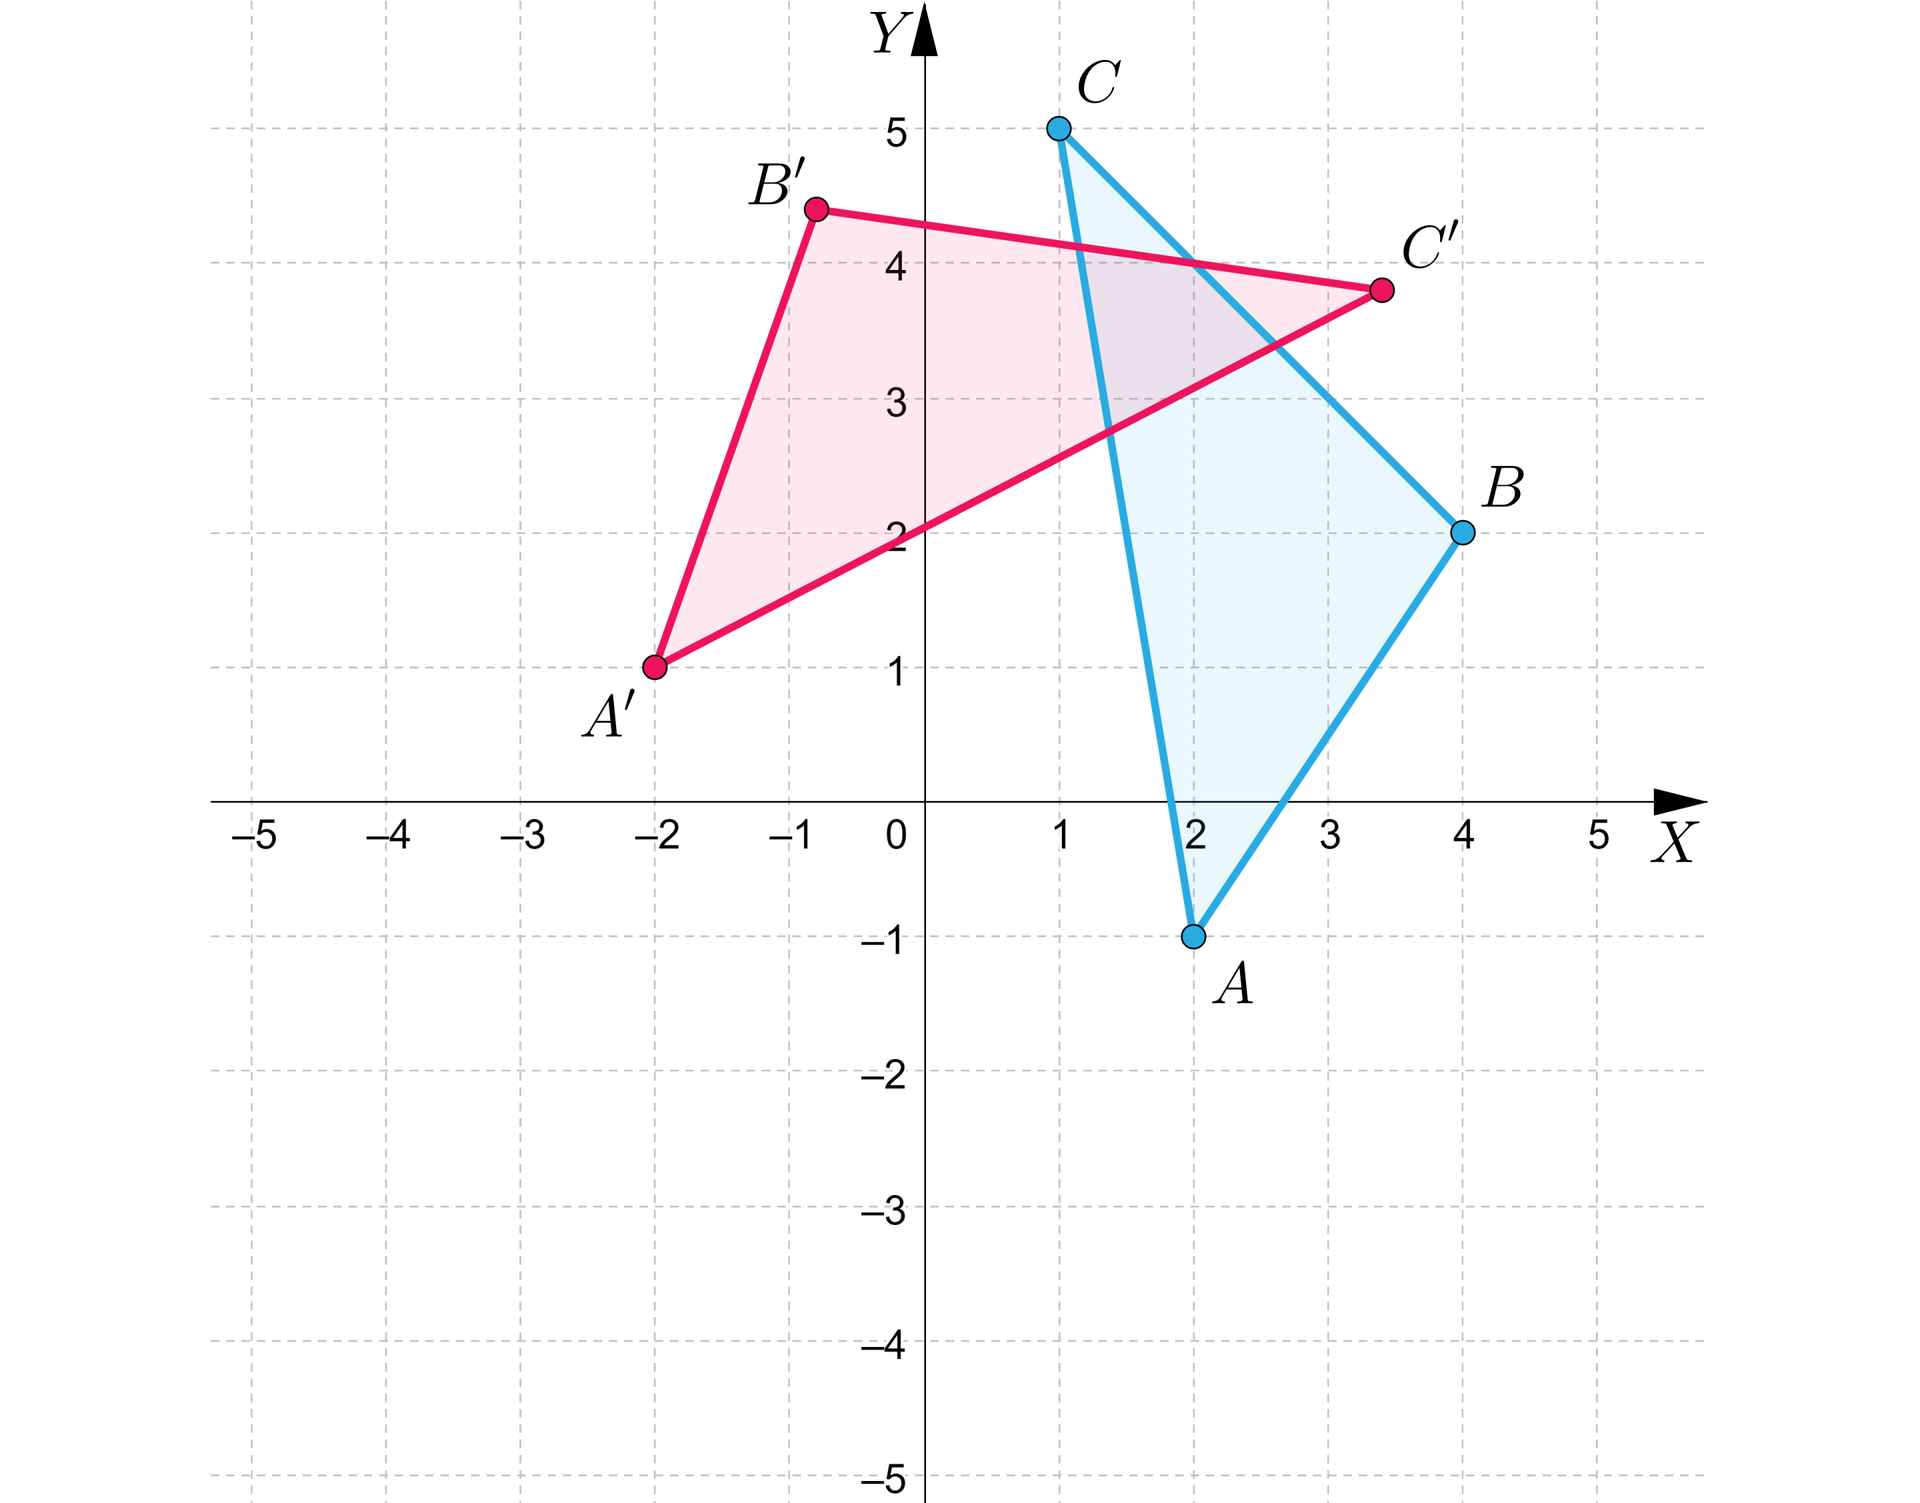 Grafika przedstawia układ współrzędnych z poziomą osią x od minus 5 do 5 i pionową osią y od minus 5 do pięciu. Na płaszczyźnie znajdują się dwa trójkąty. Pierwszy o wierzchołkach: A, B, C. Punkt A ma współrzędne: nawias, 2, minus 1, zamknięcie nawiasu. Punkt B ma współrzędne: nawias, 4, 2, zamknięcie nawiasu. Punkt C ma współrzędne: nawias, 1, 5, zamknięcie nawiasu. Drugi o wierzchołkach: A’, B’, C’. Punkt A’ ma współrzędne: nawias,  minus 2, 1, zamknięcie nawiasu. Punkt B’ ma wartość x pomiędzy minus 1 i 0, a wartość y pomiędzy 4 a 5. Punkt C’ ma wartość x pomiędzy 3 i 4, a wartość y również pomiędzy 3 i 4.